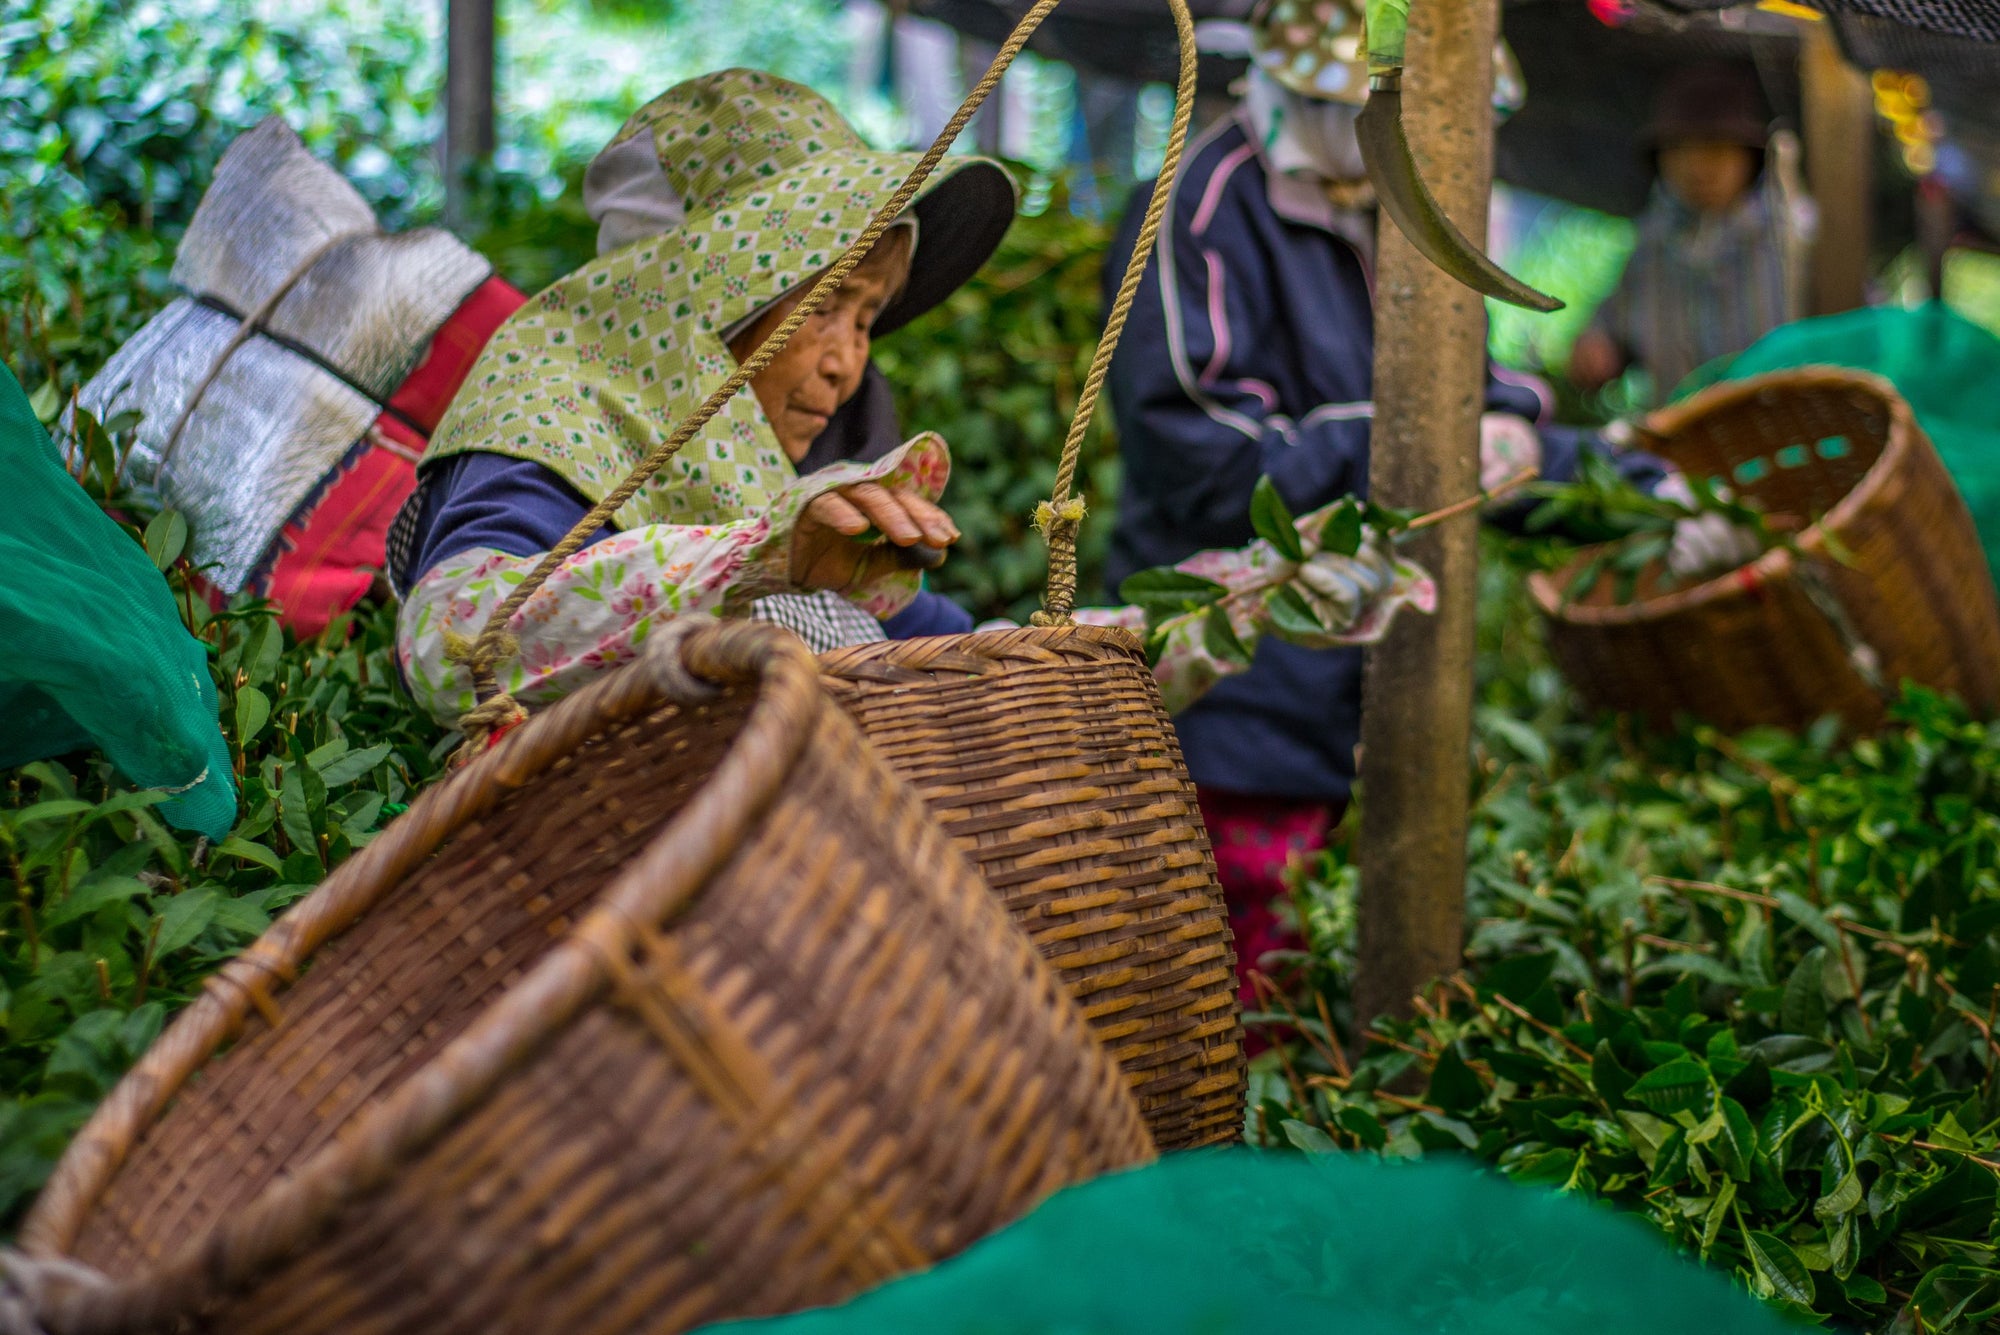 Le matcha noka matcha est récolté selon les méthodes traditionnelles, en famille, au japon, par des agriculteurs passionnés de génération en génération